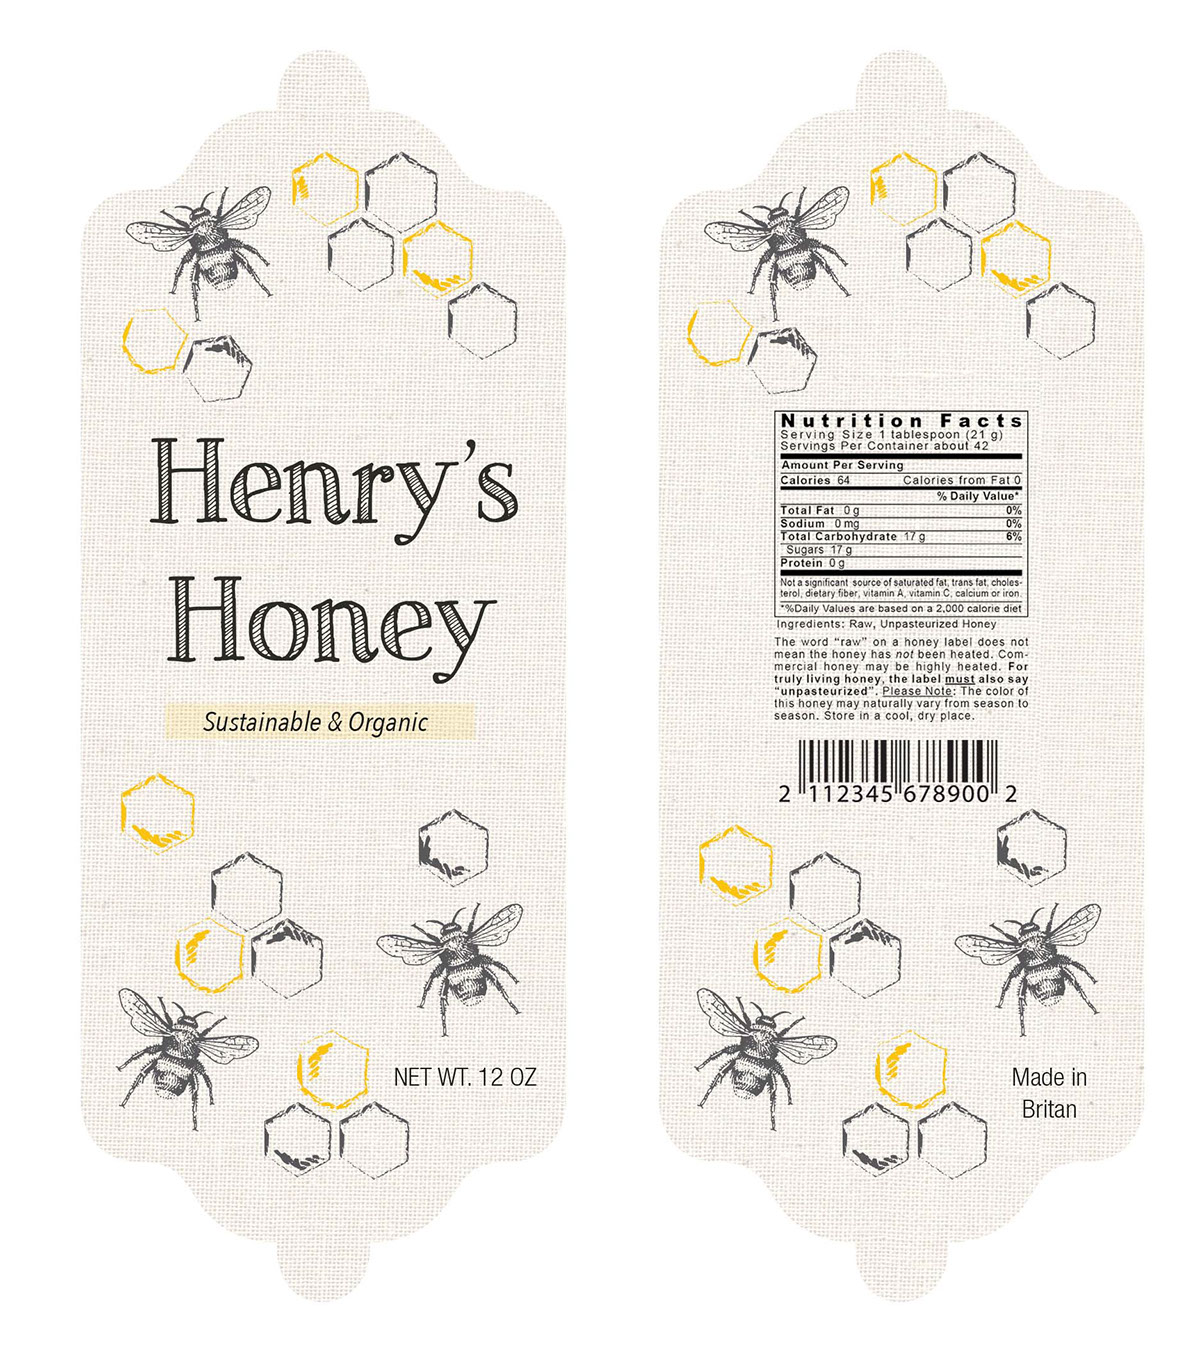 Packaging Food  honey branding  organic bee